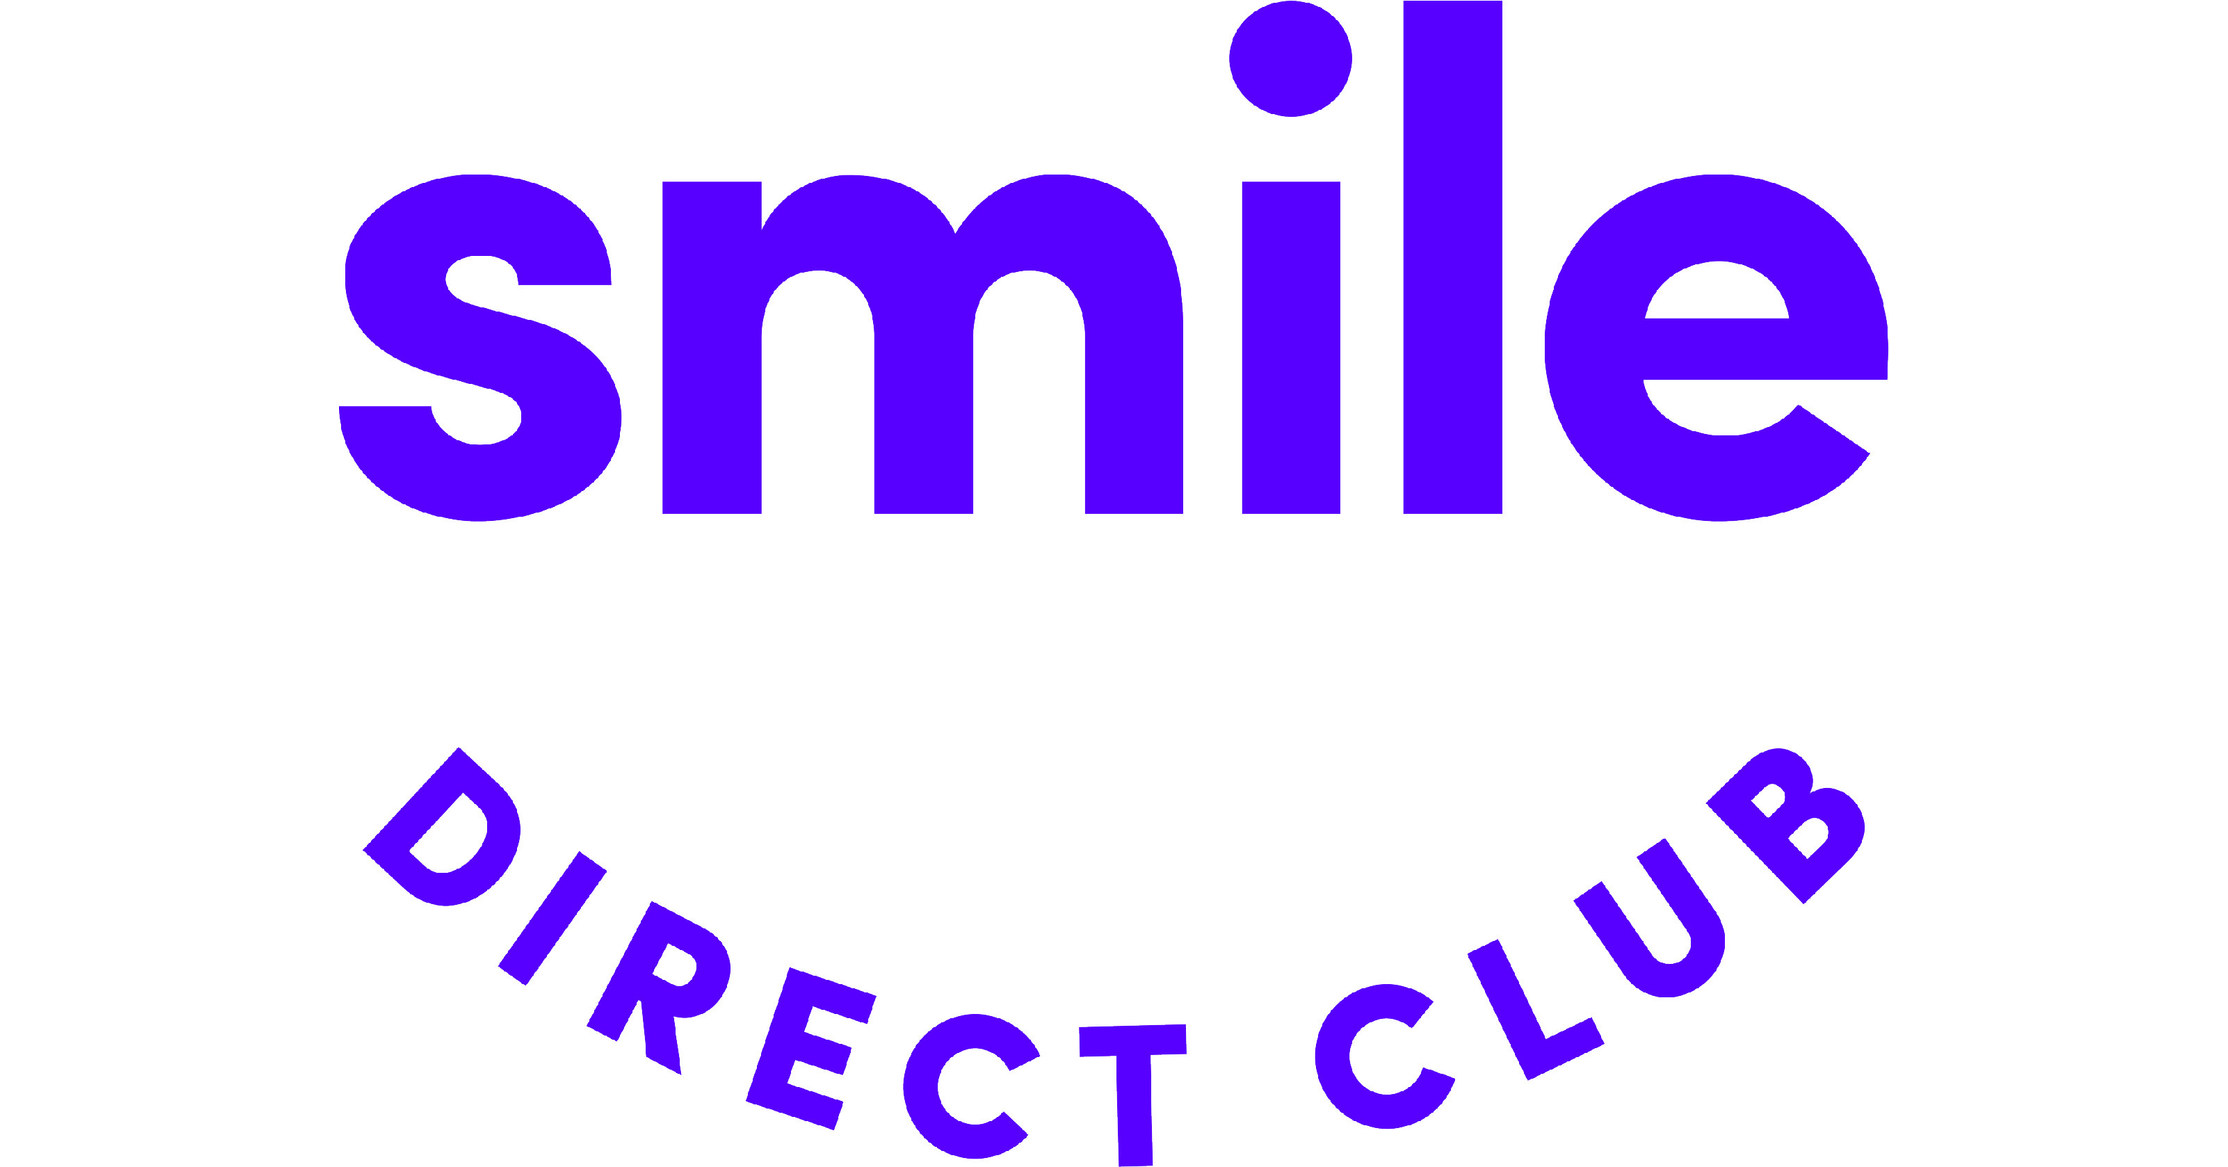 teledentistry-pioneer-smile-direct-club-brings-a-u-s-smile-to-britain